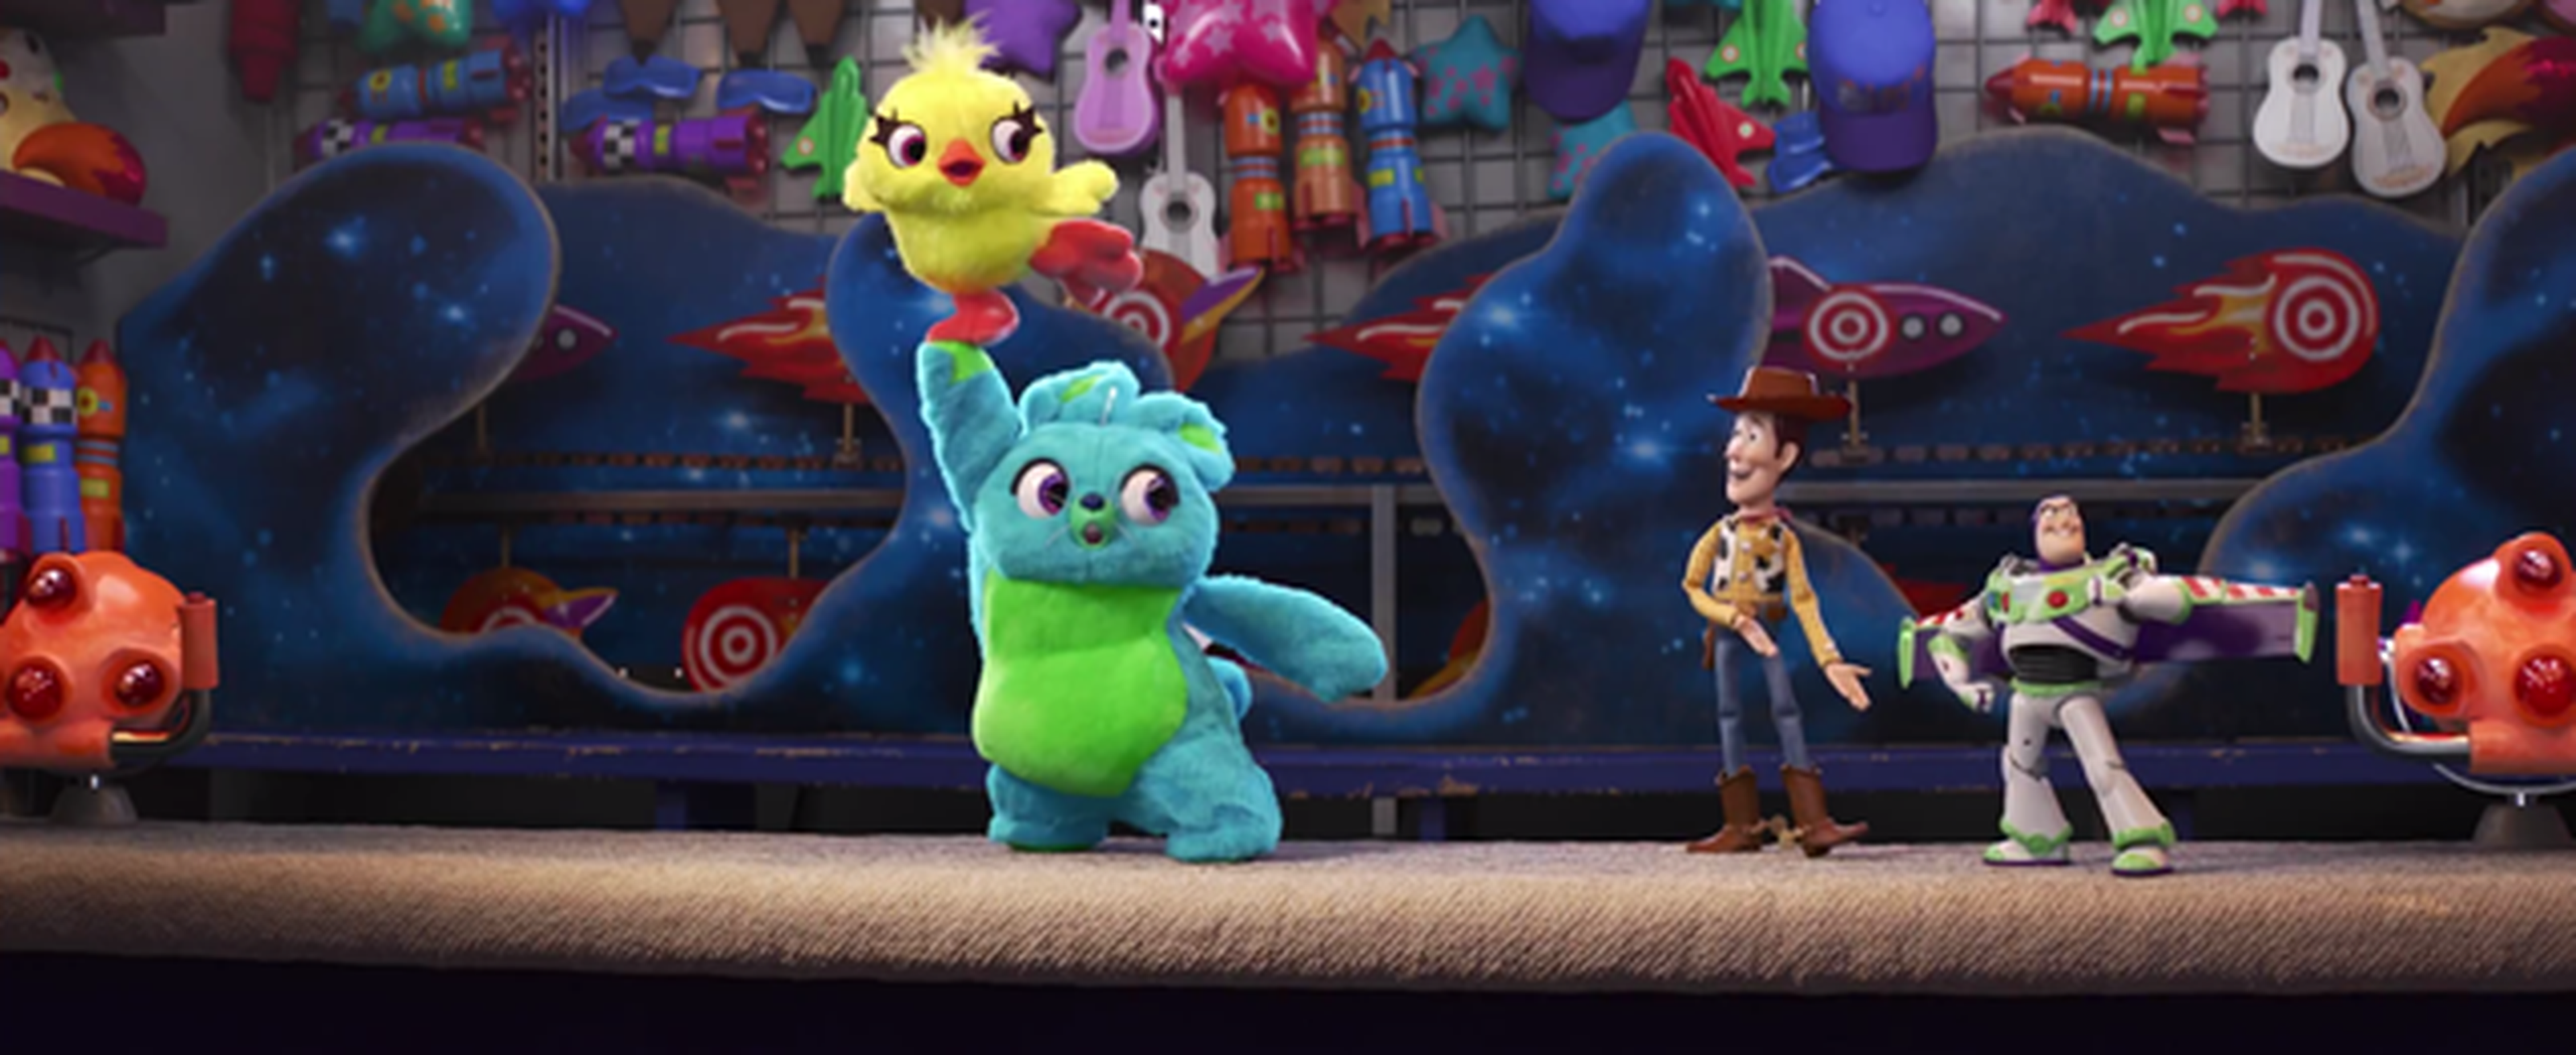 Toy Story 4 - Nuevo teaser tráiler con los personajes Ducky y Bunny